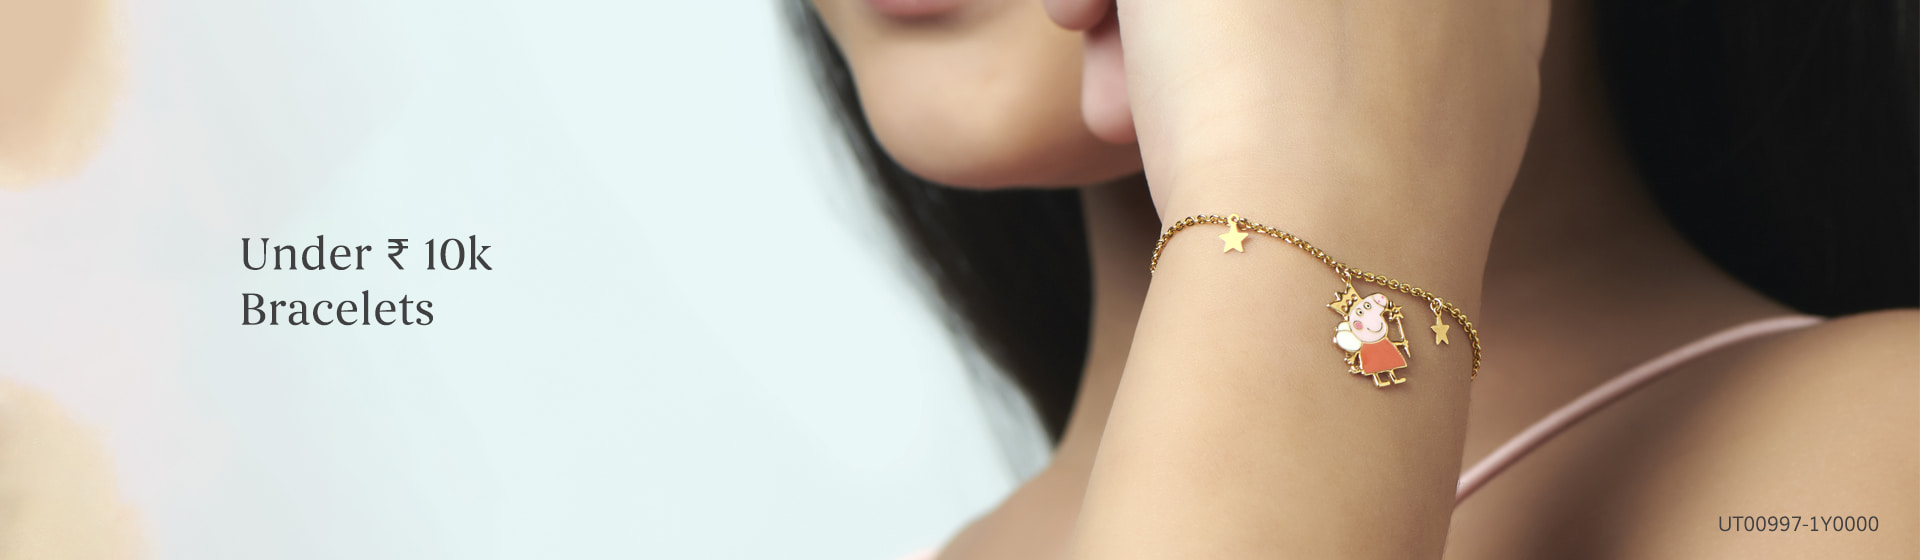 Buy Diamond Bracelets Under 10k for Women & Girls